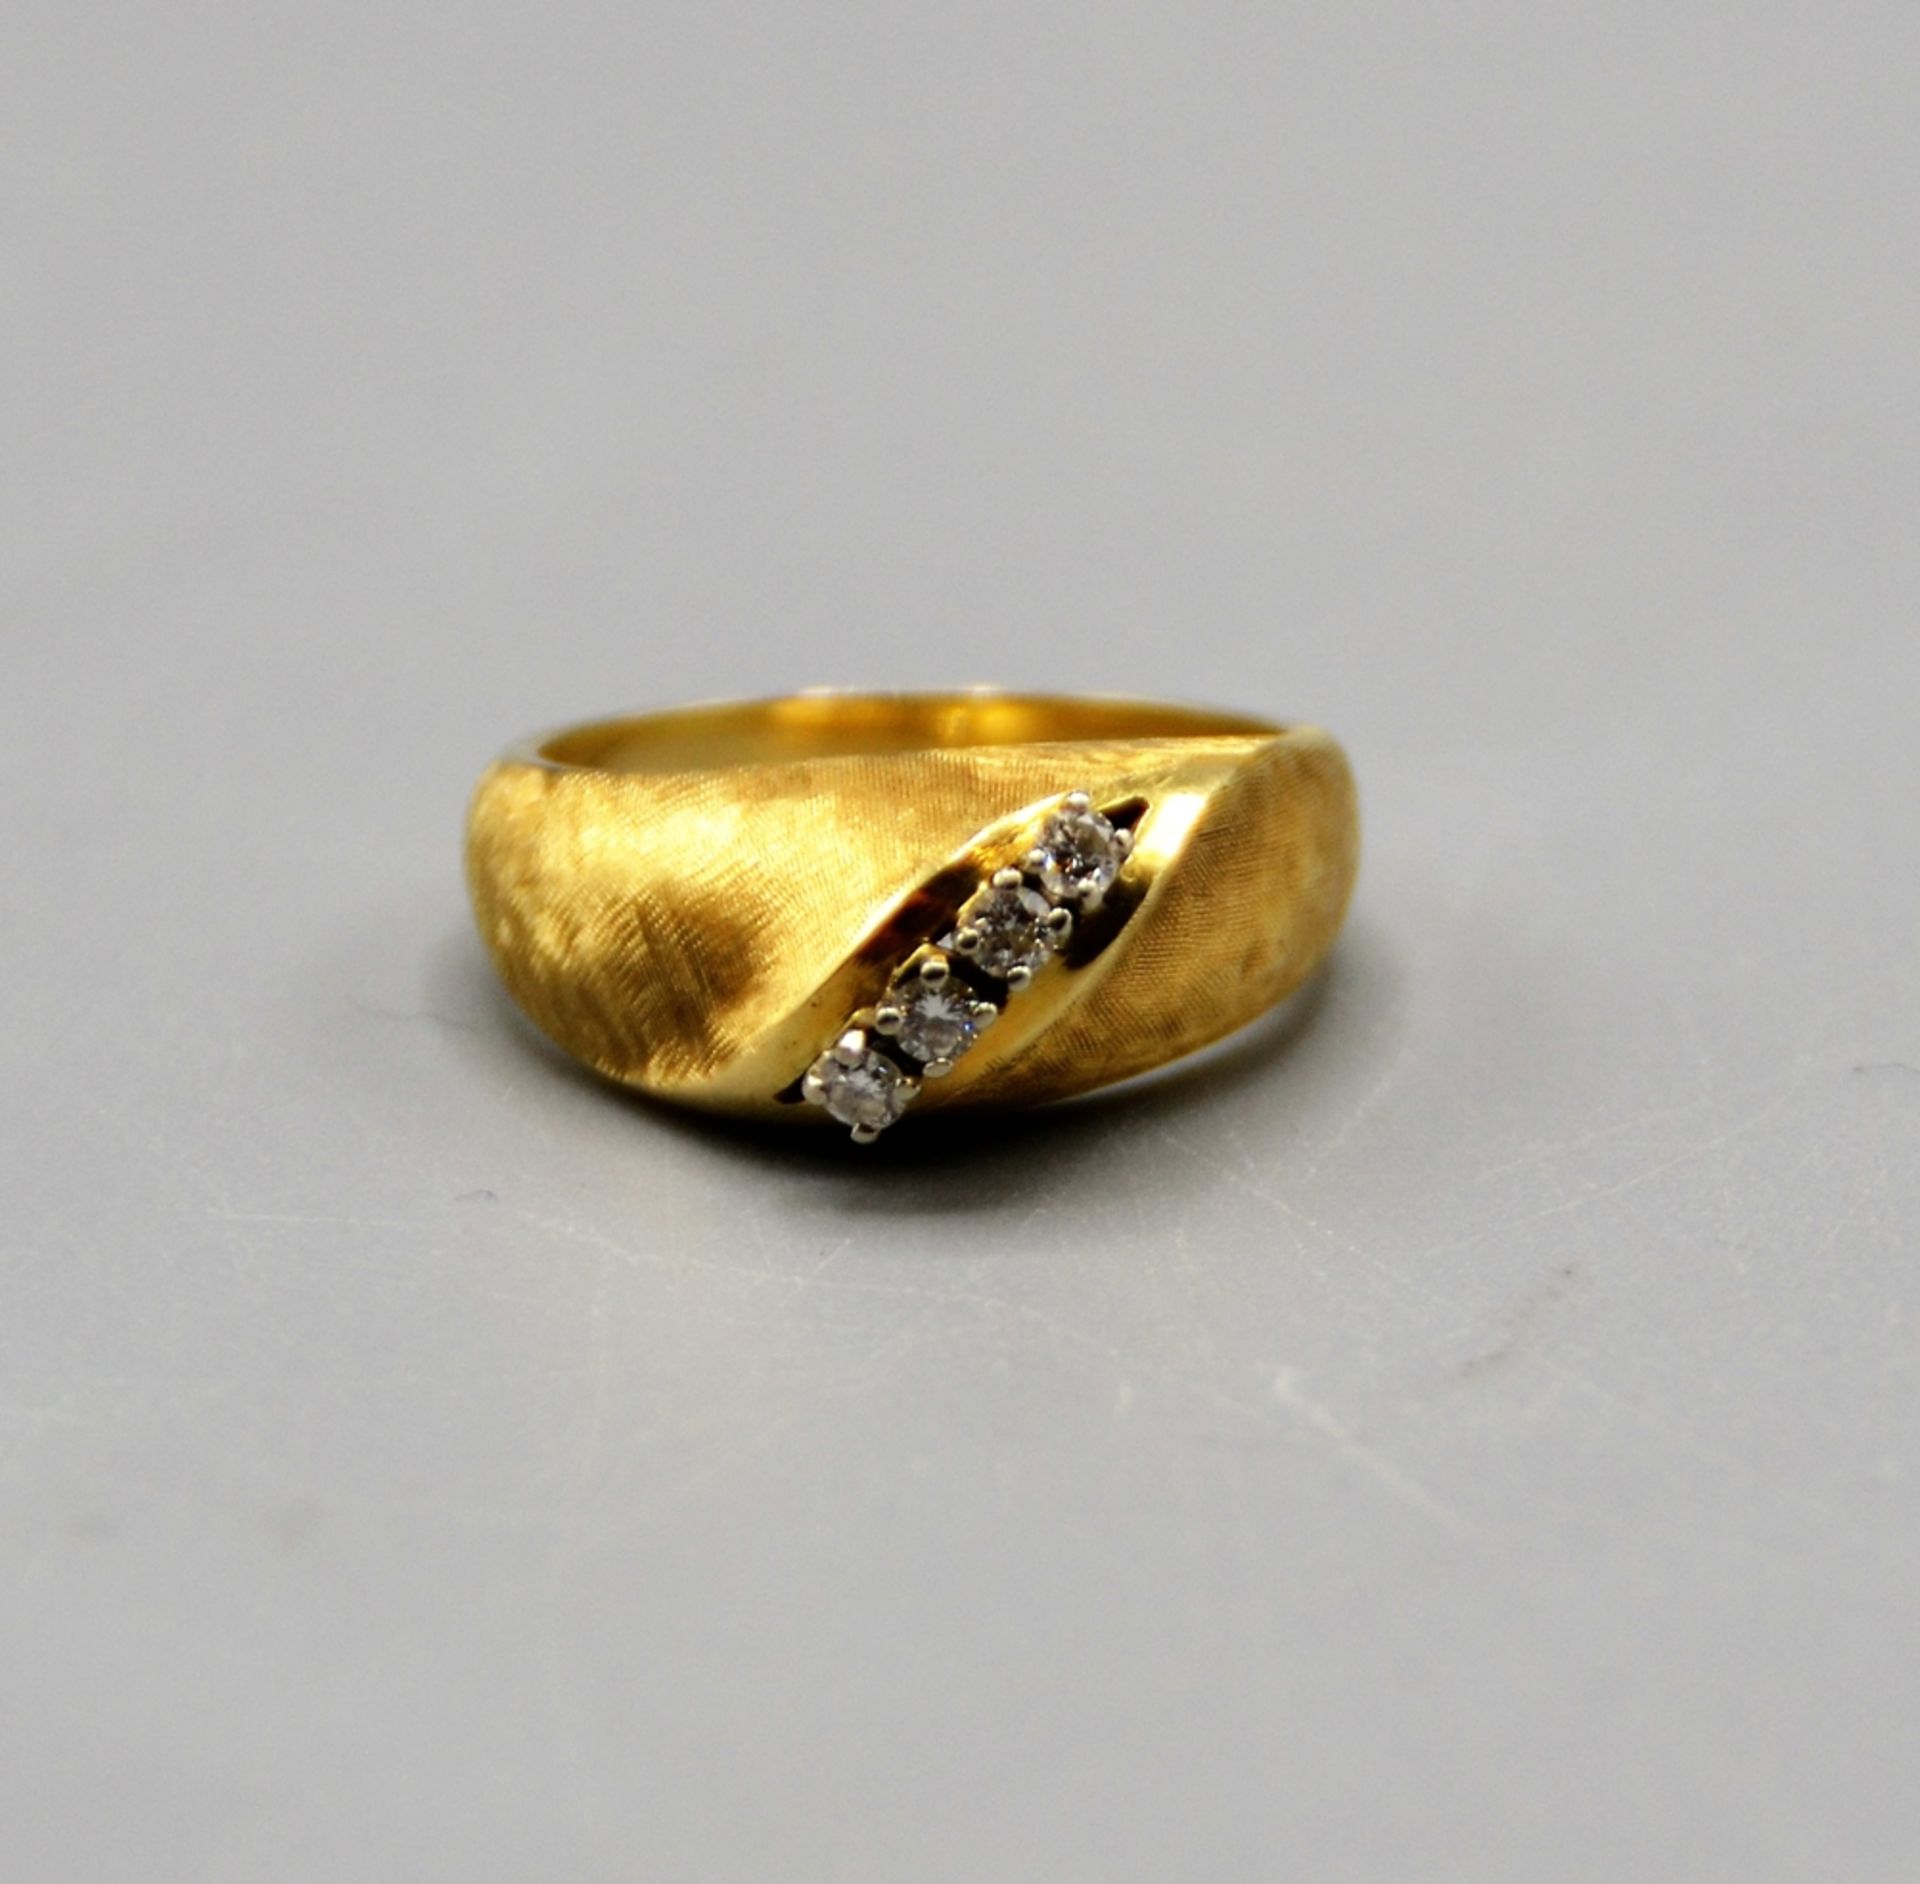 Brillantring Goldring 585 mit 4 kleinen Brillanten zus. ca. 0,2 ct., Ring Ø 17 mm, 7,8 g - Image 3 of 4